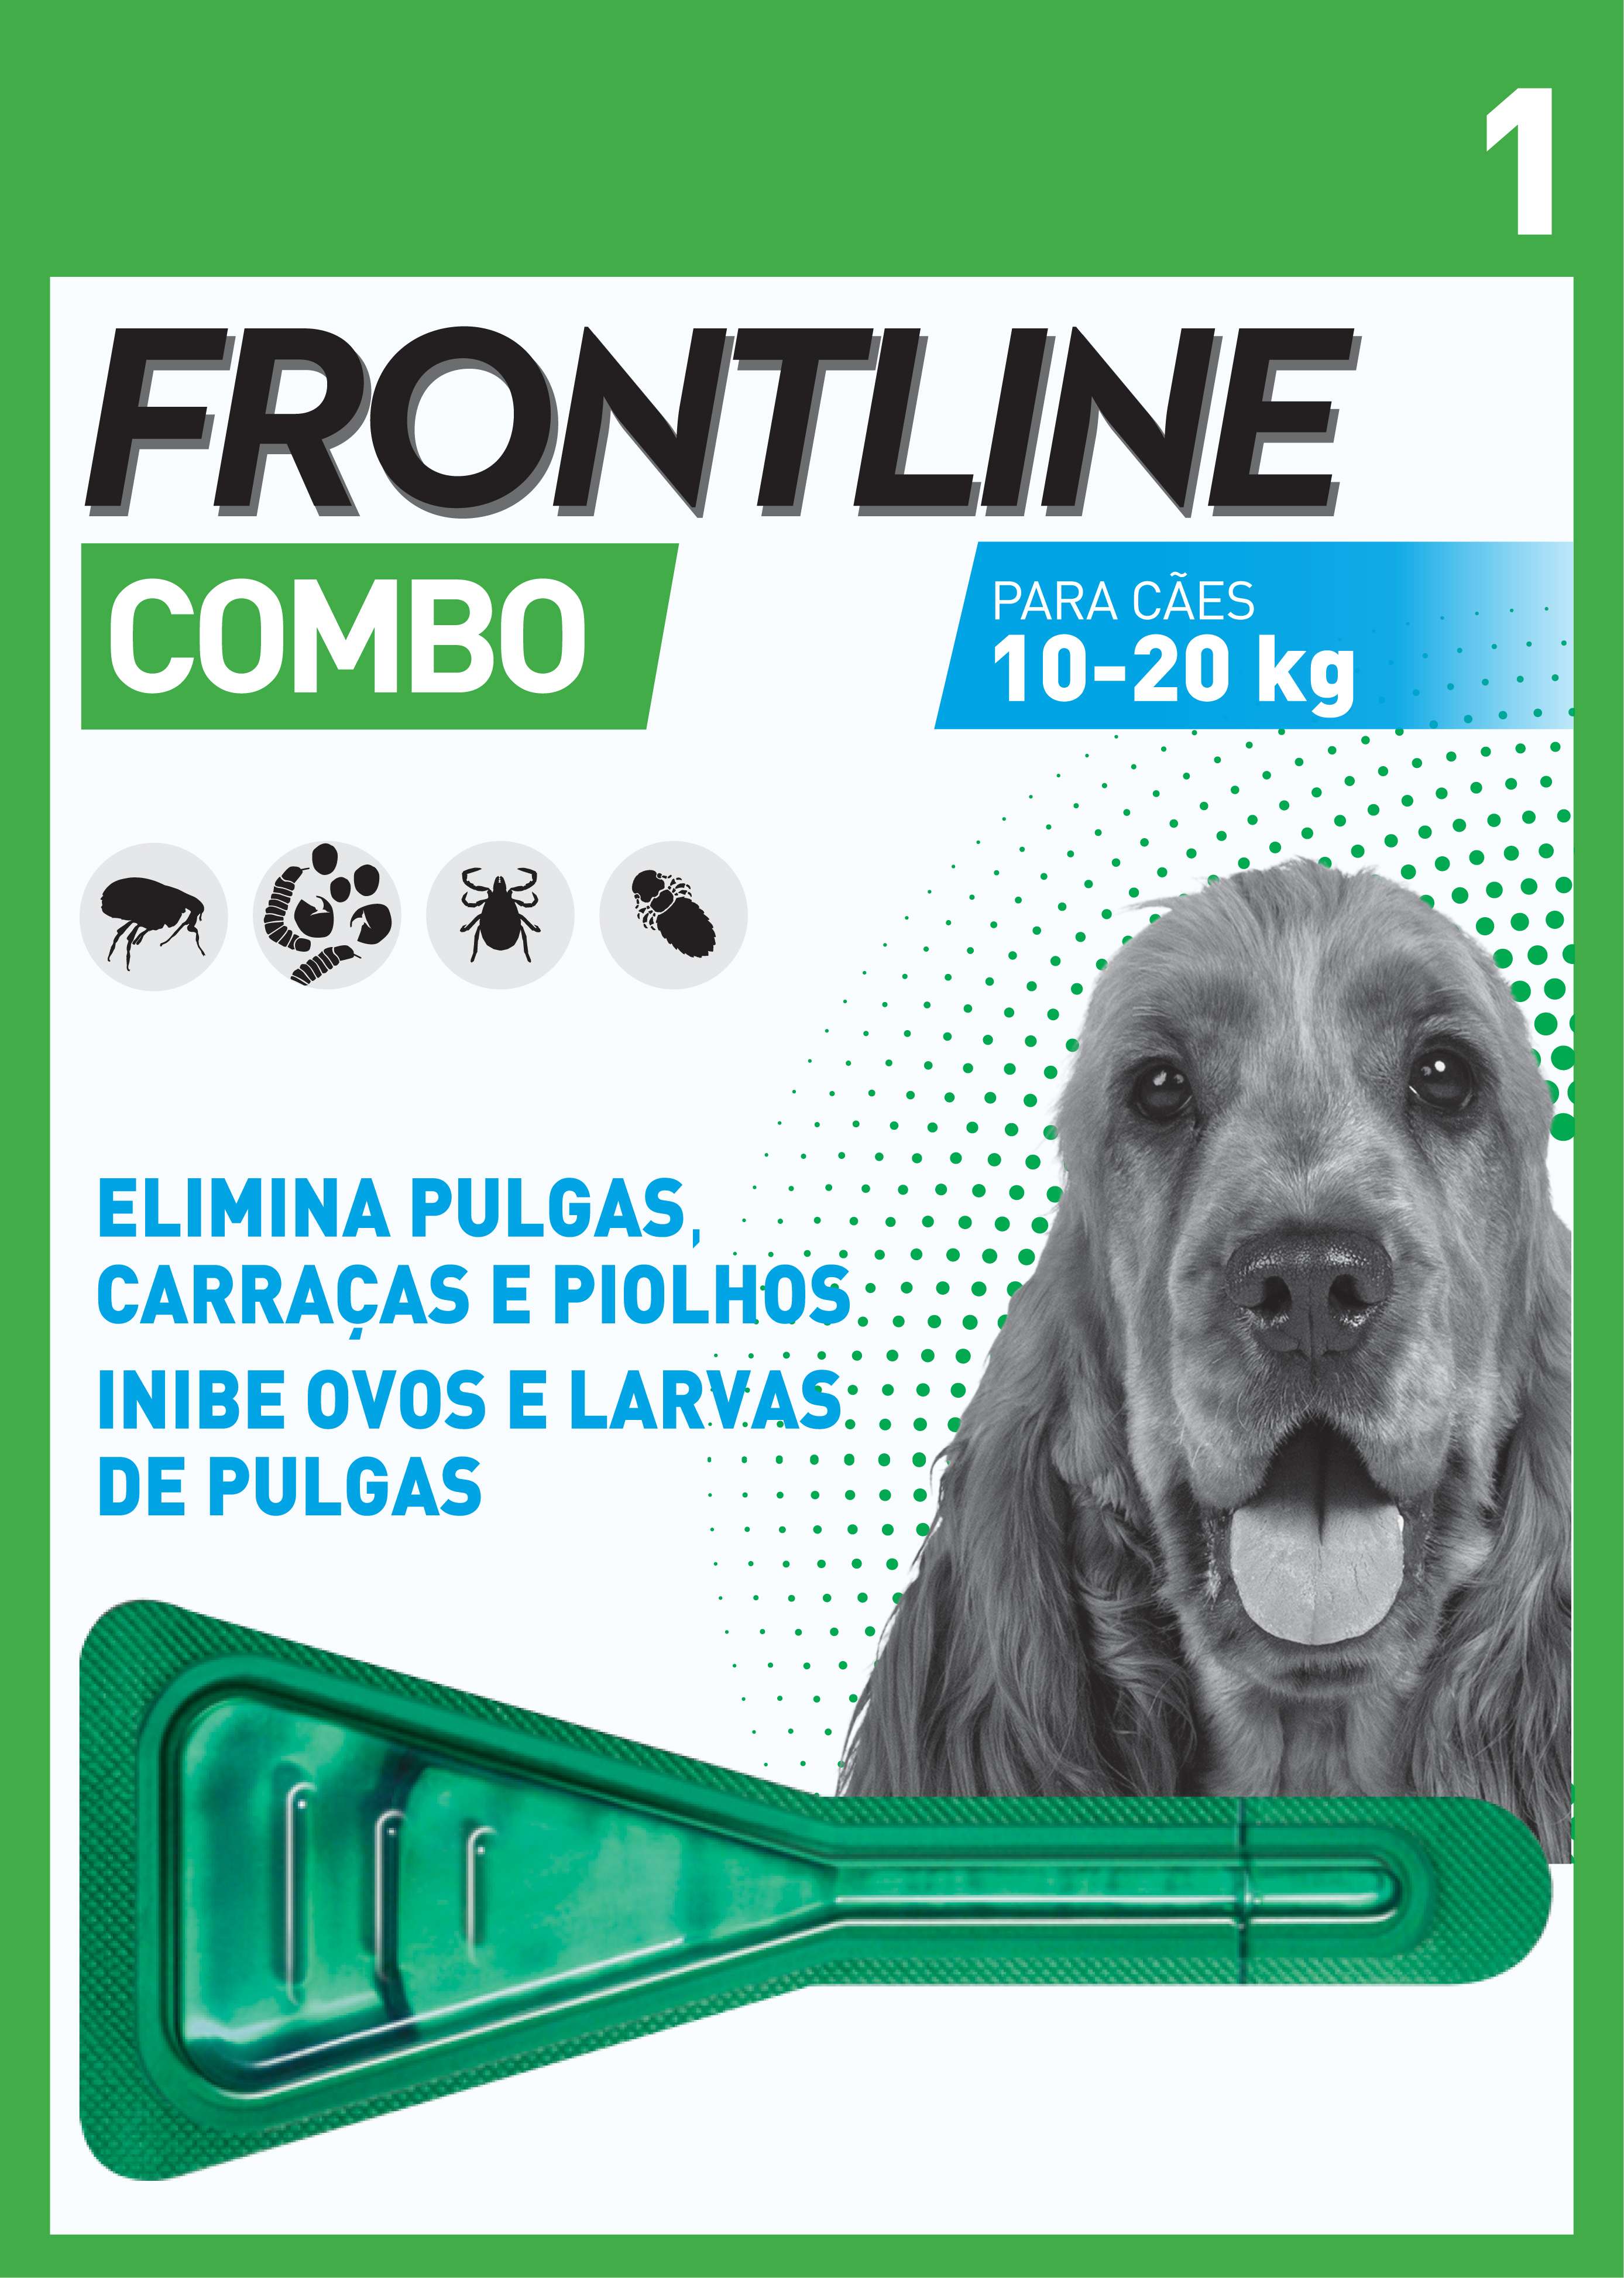 Frontline Combo Antiparasitário Cão 10-20kg 1 unidade